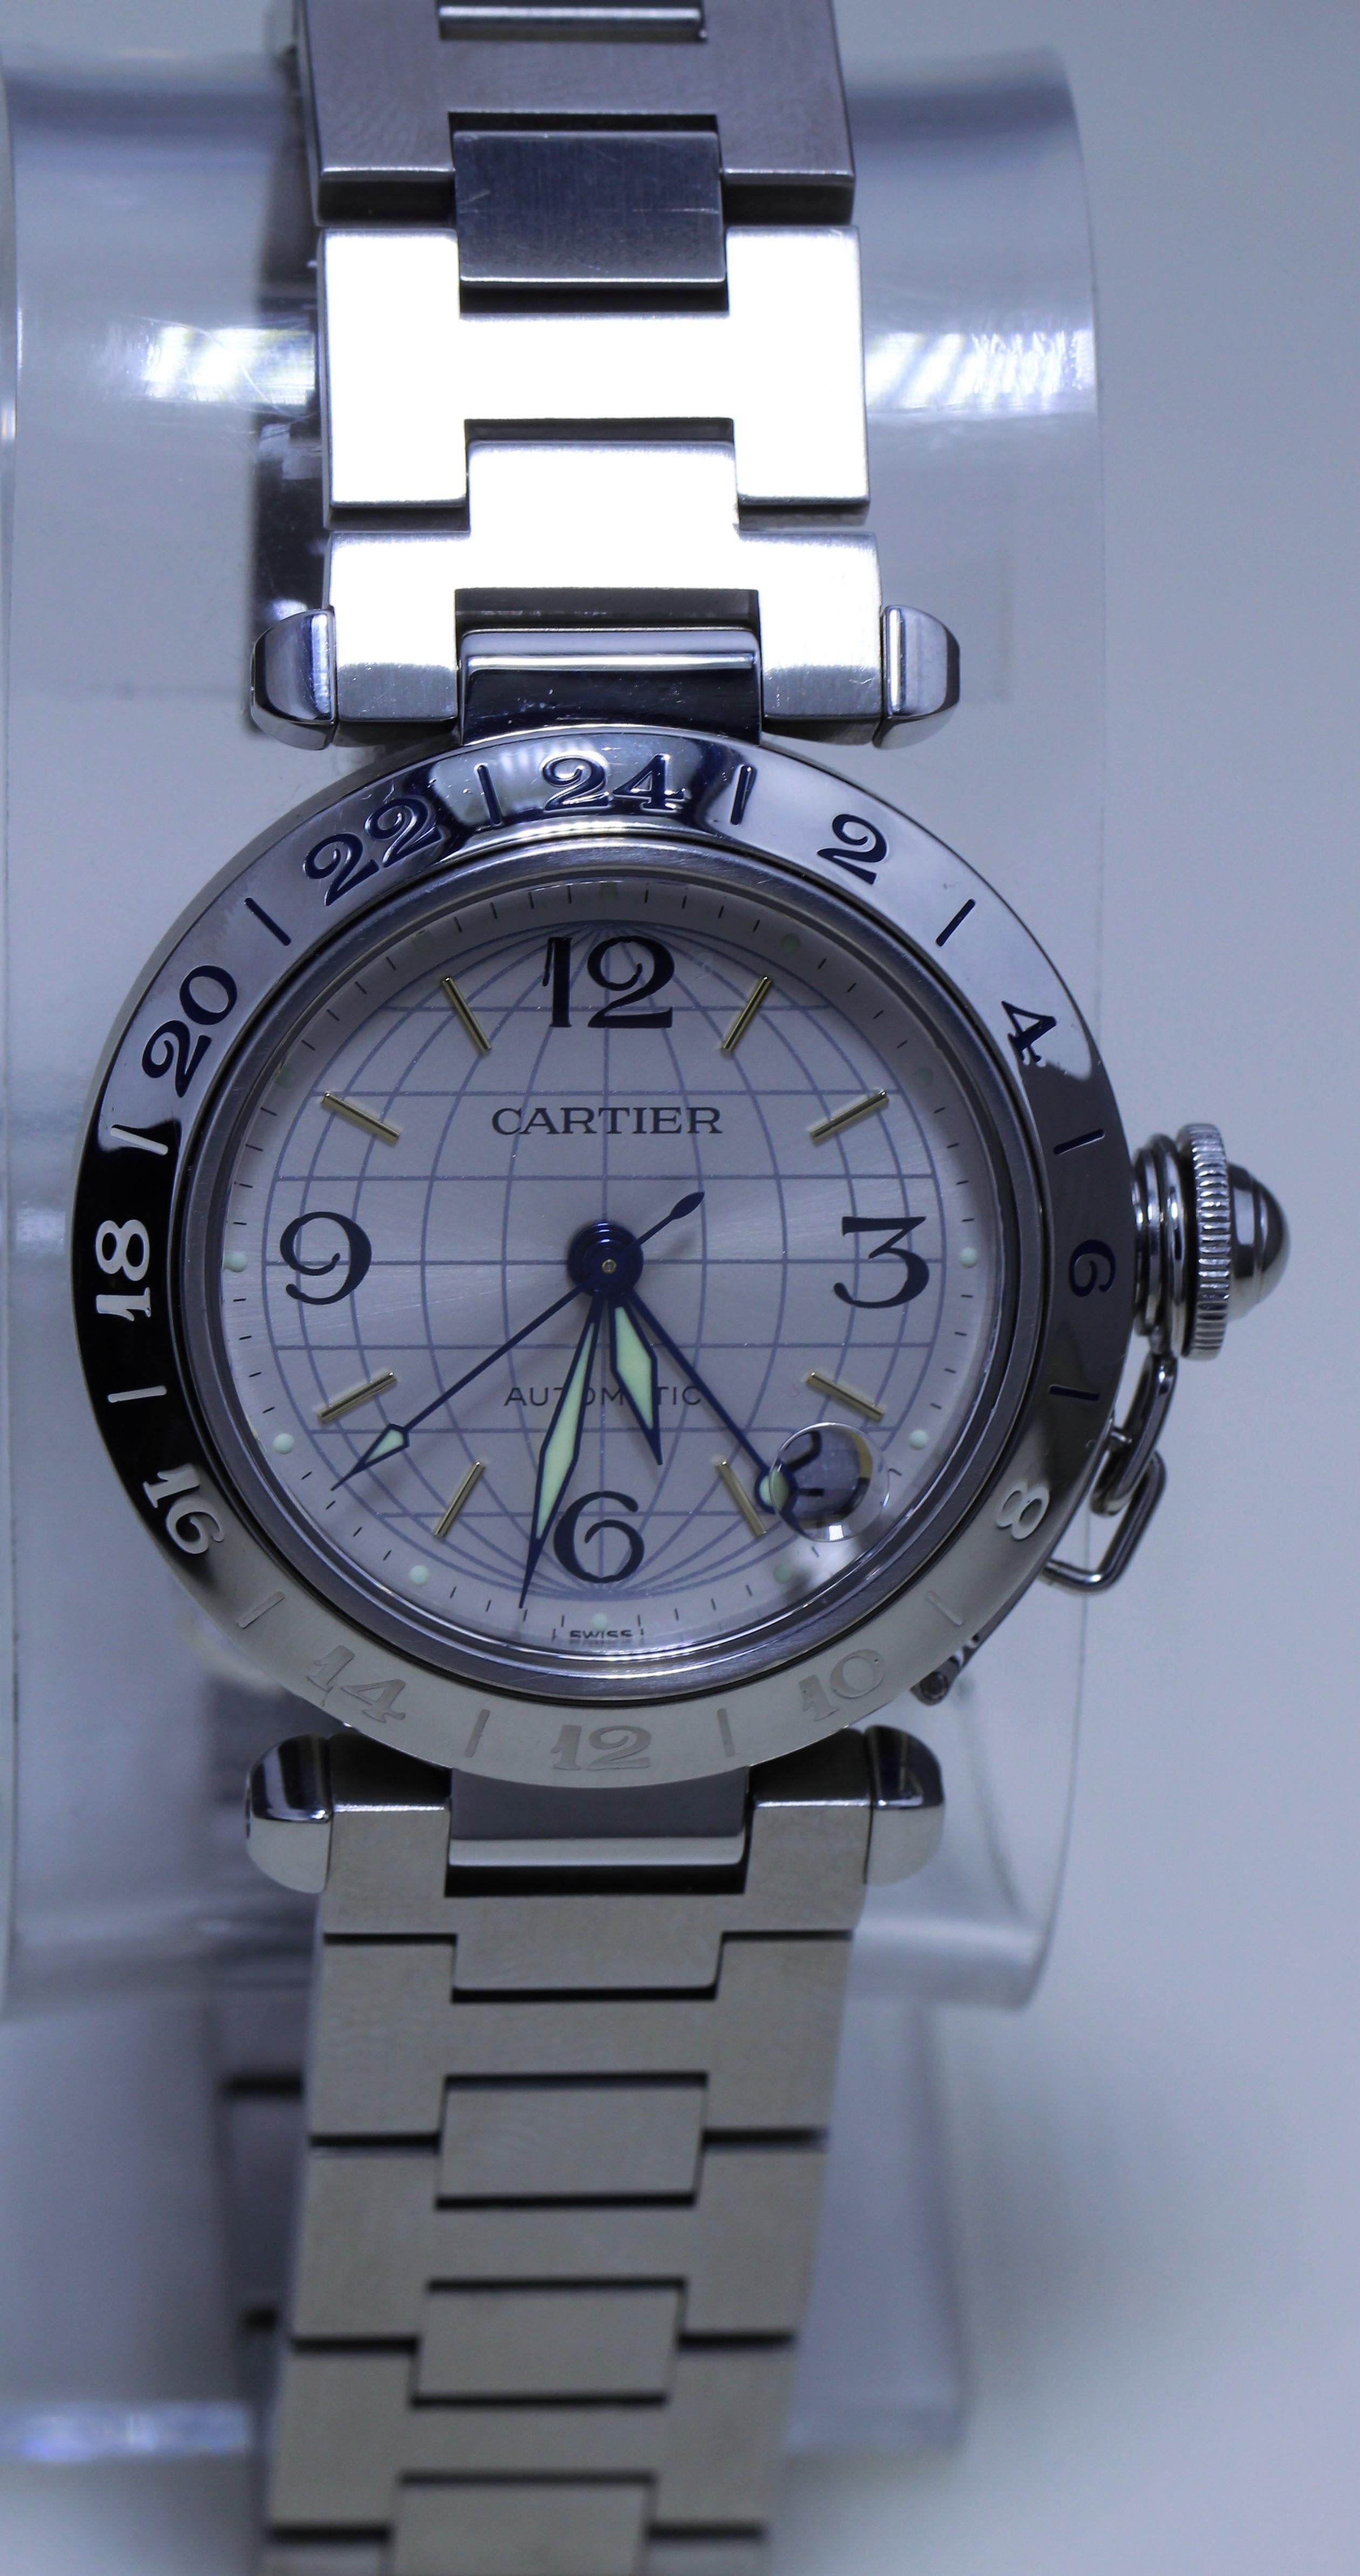 Cartier Stainless Steel Men's Watch
Bezel- 35 mm
Water Resistant - 100/330 FT


Phosphorescent Dials
Date Display